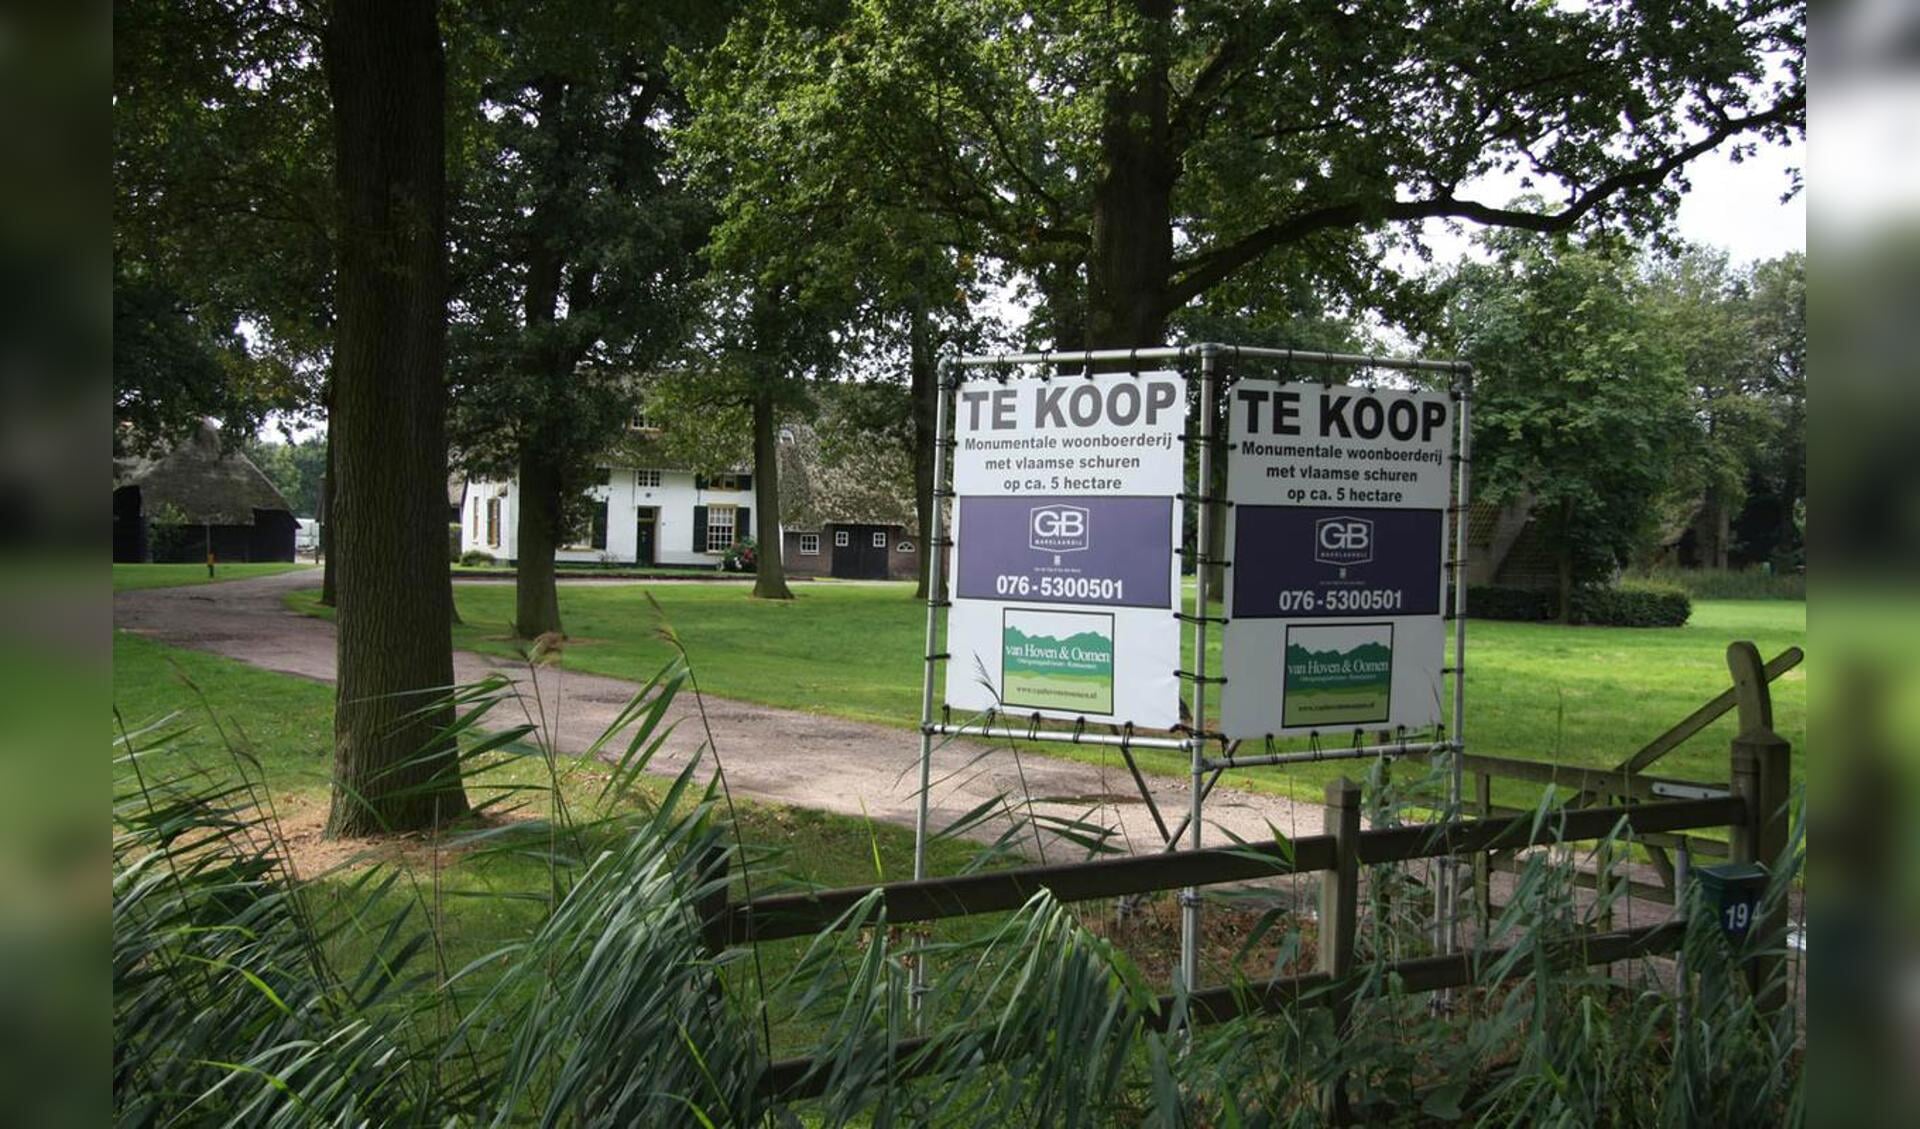 Huizen en grond te koop aan de Dr. Batenburglaan in Breda. foto Erik Eggens